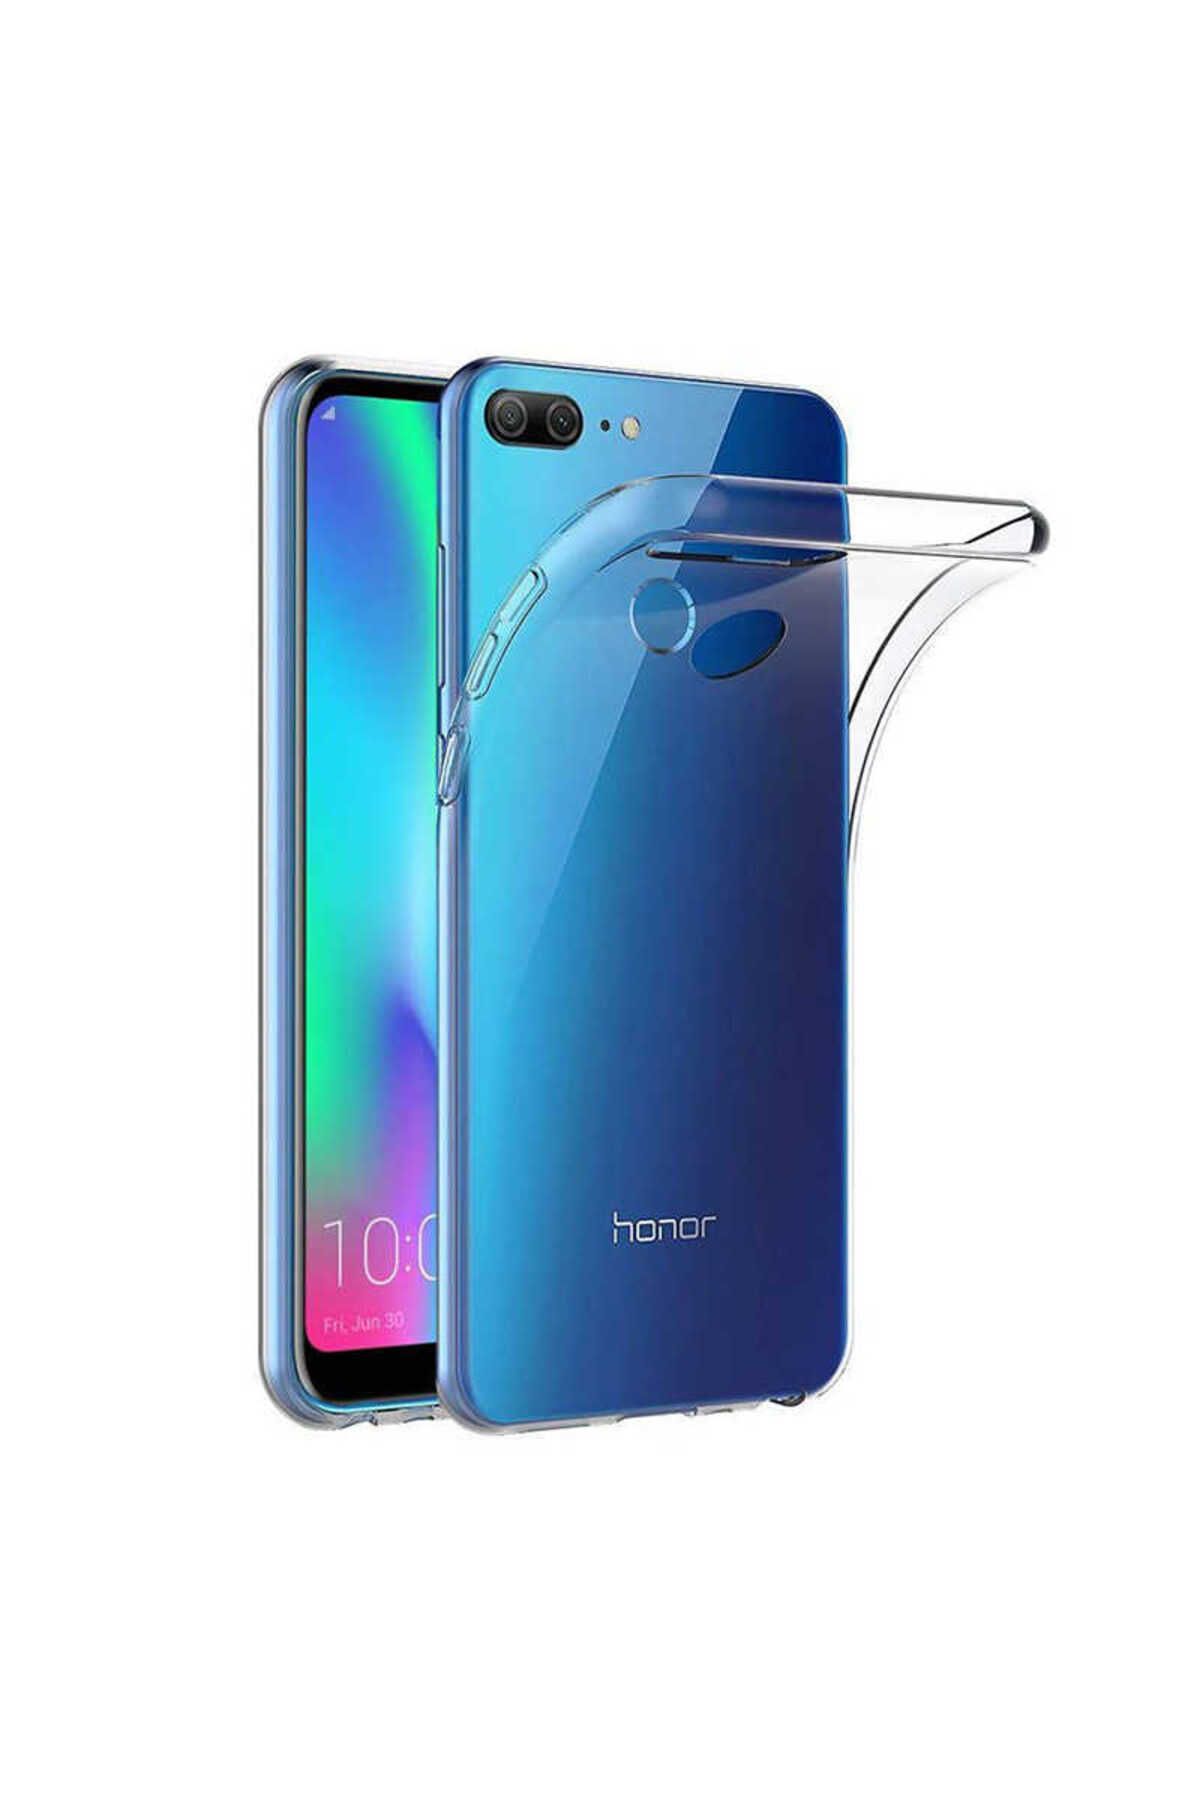 GRABONO Huawei Honor 9 Lite Uyumlu Dayanıklı ve Esnek Şeffaf Renksiz Kılıf